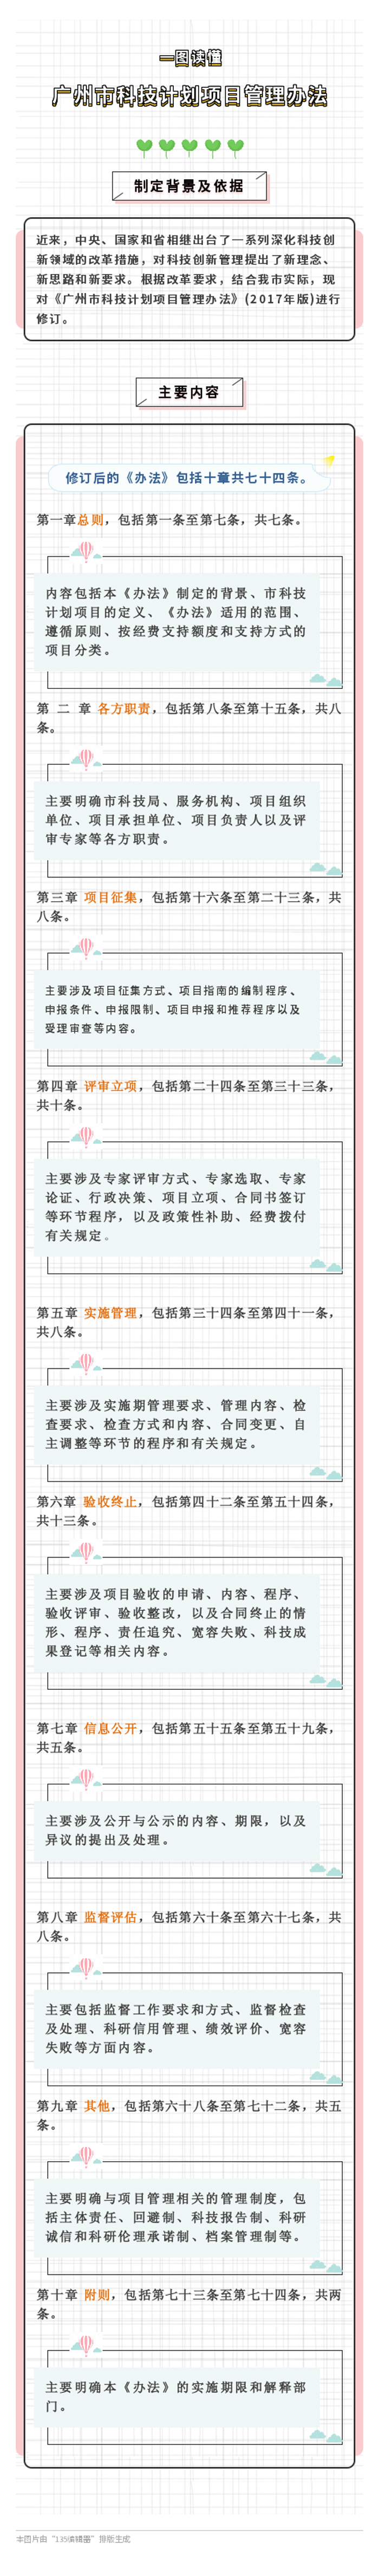 关于《广州市科技计划项目管理办法》的解读材料-(1).jpg